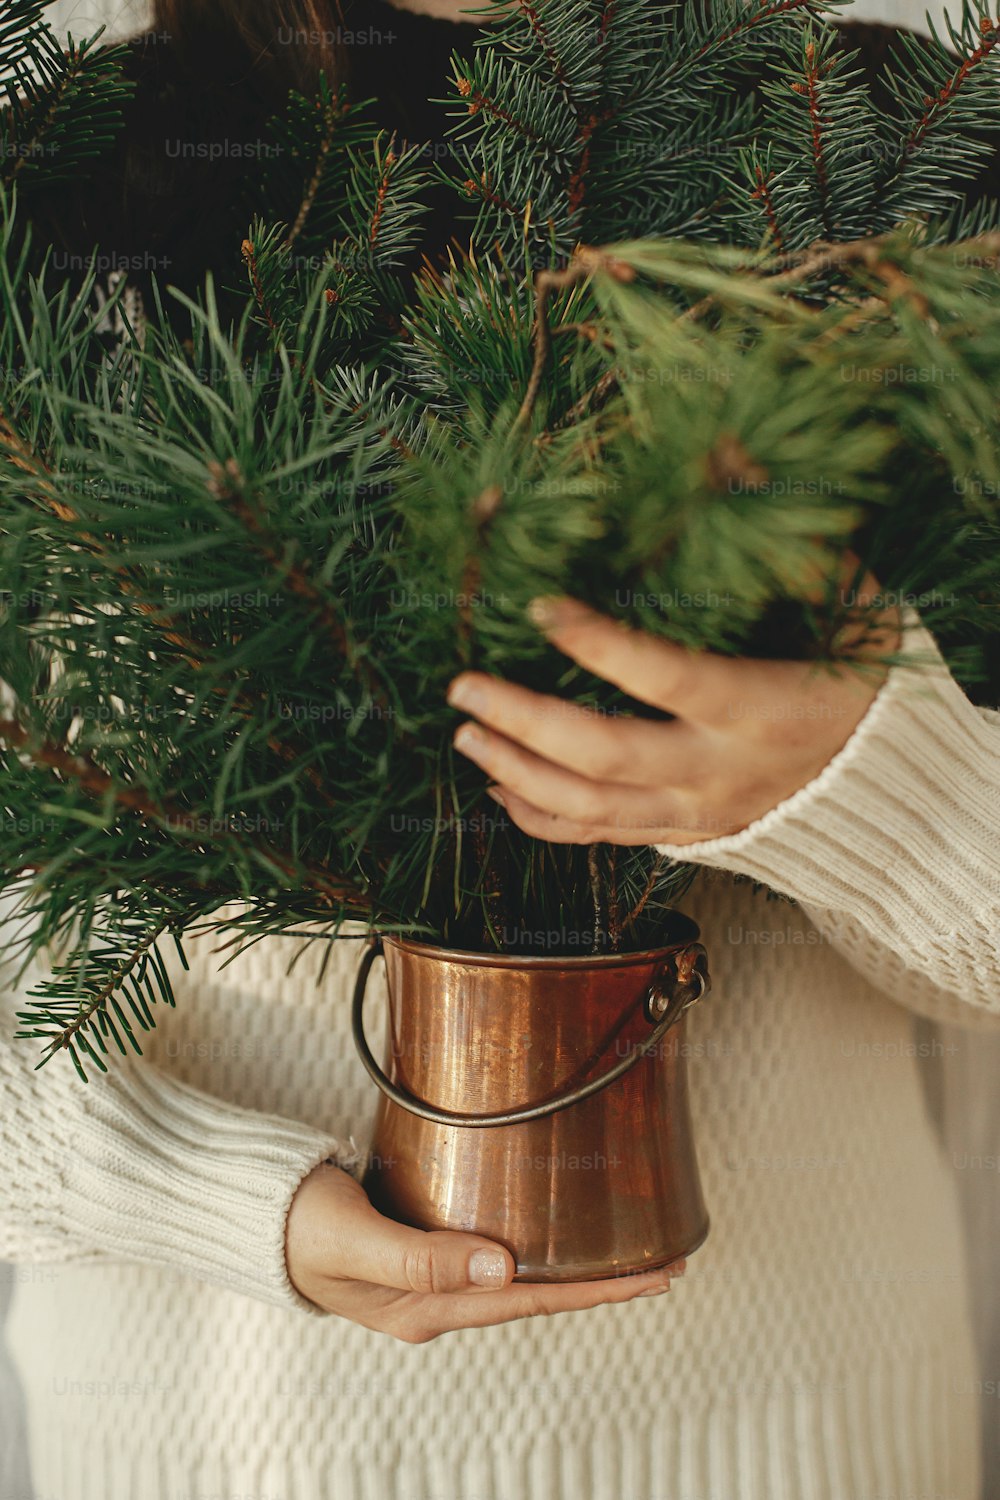 Mani di donna in elegante maglione accogliente che tiene un vaso vintage con rami di pino e abete in una stanza rustica, vista ritagliata. Preparativi per le vacanze invernali. Buon Natale!